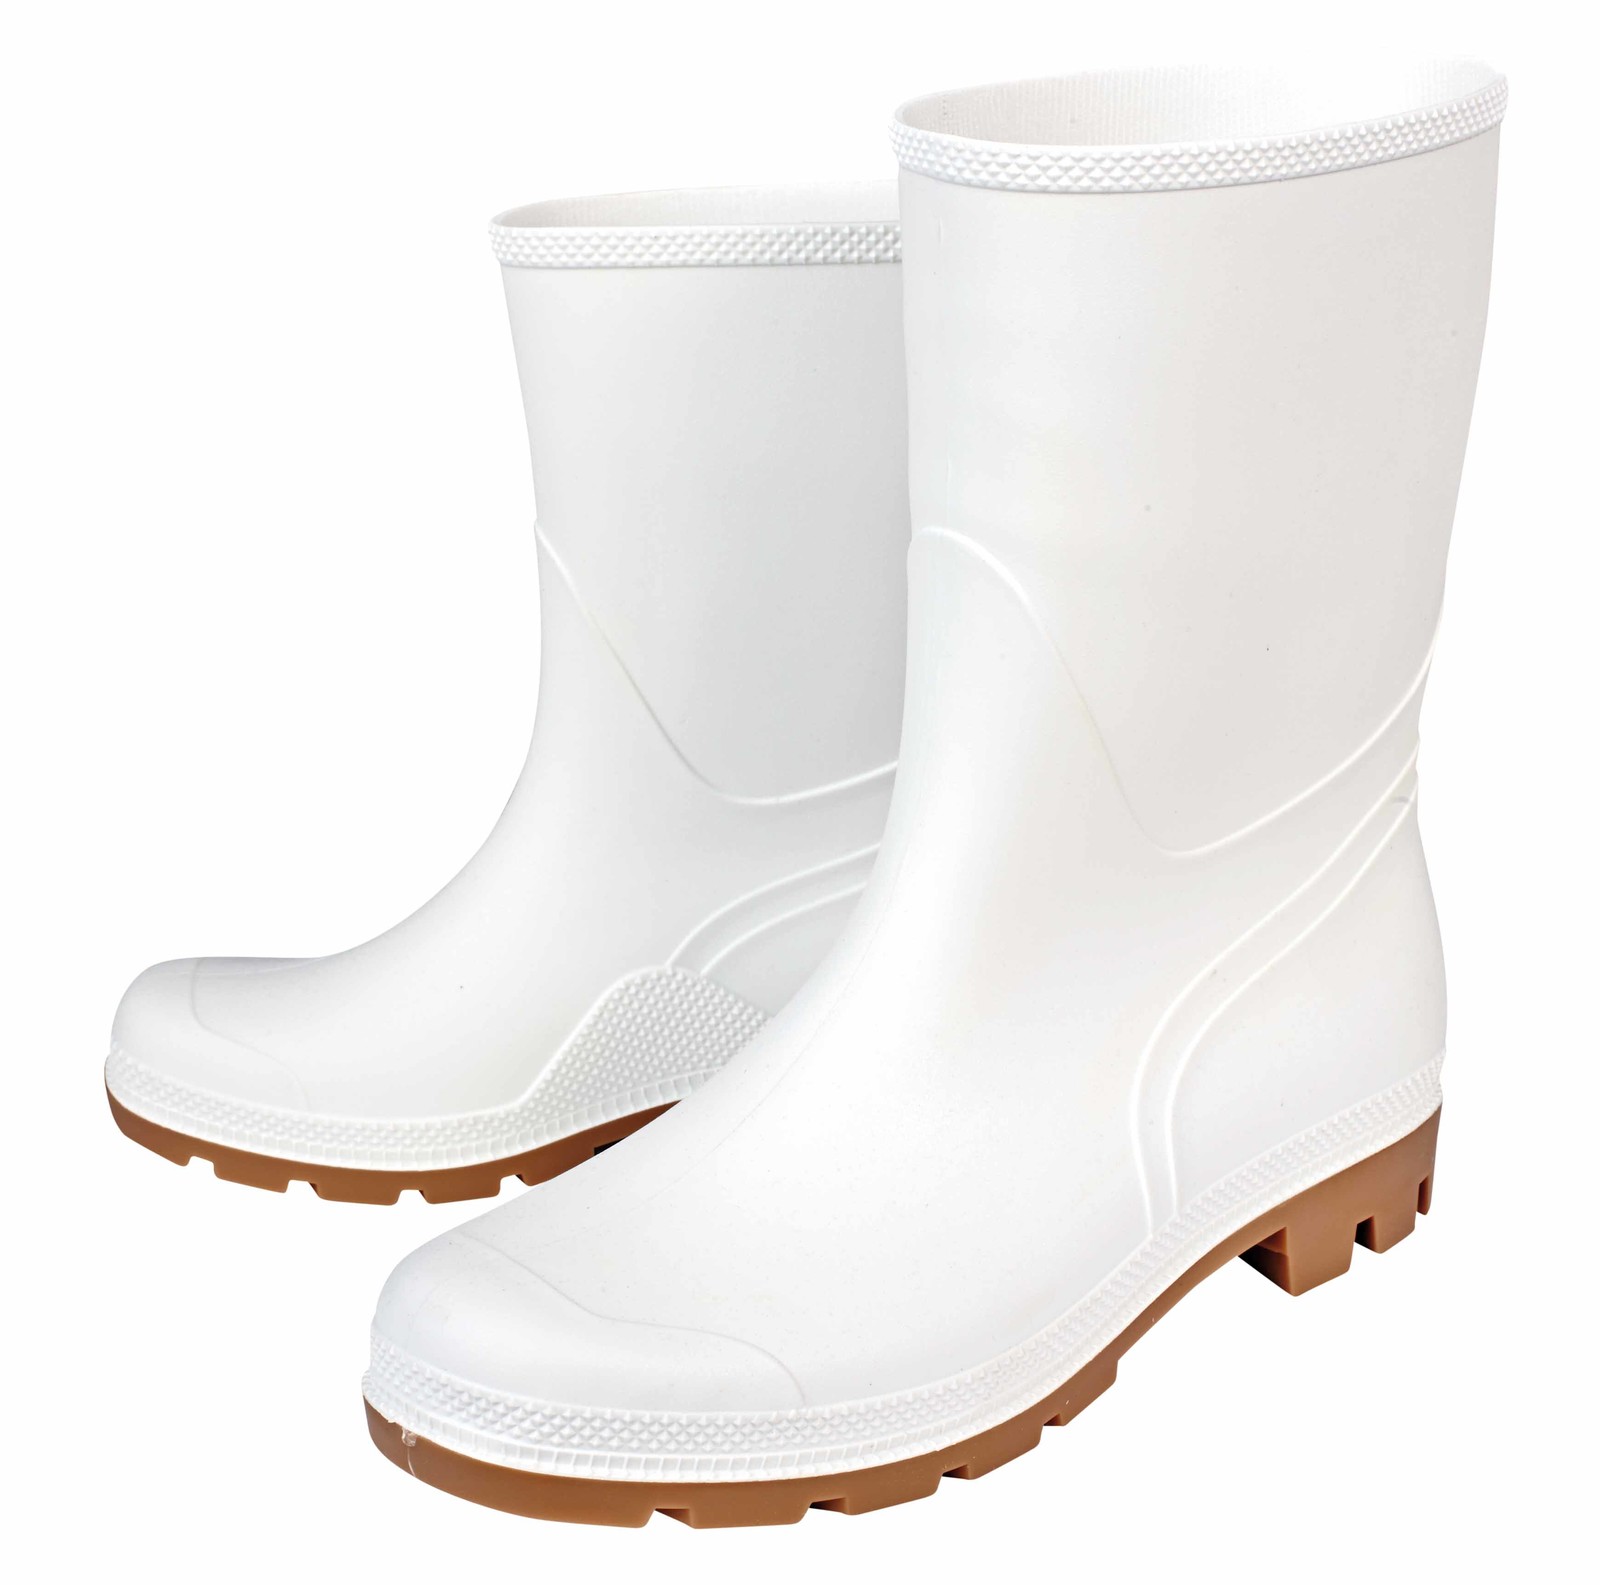 Gumáky Boots Troncheto PVC nízke - veľkosť: 38, farba: biela